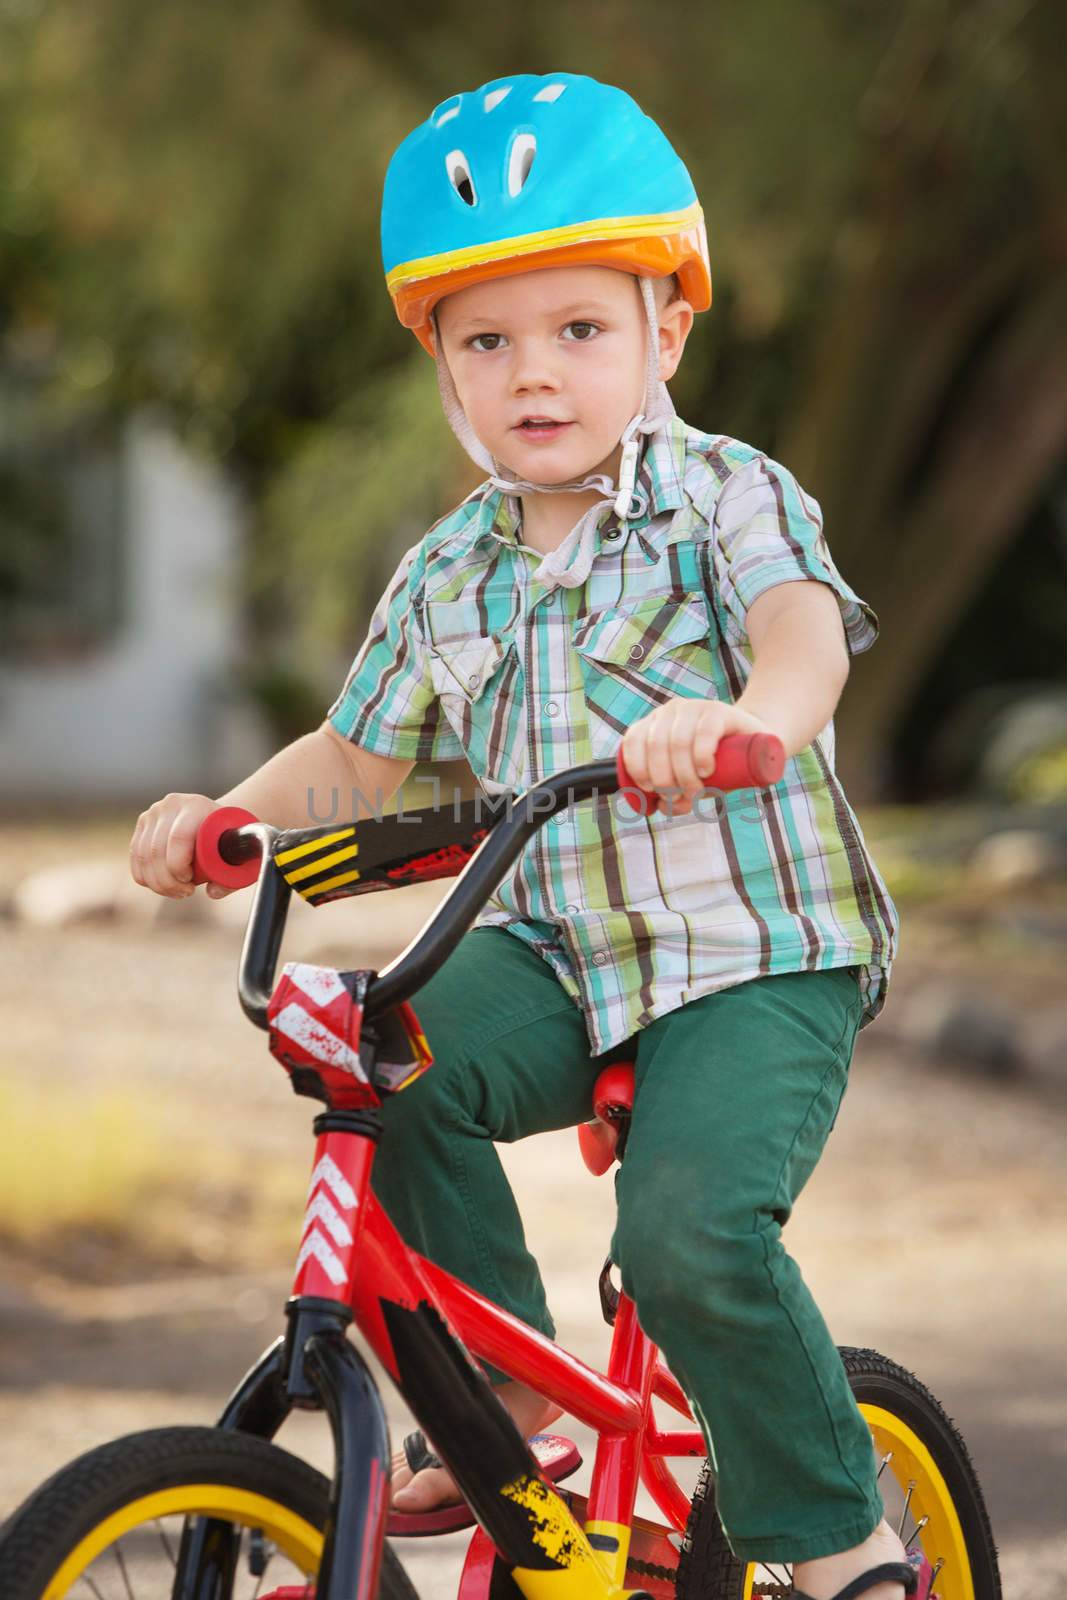 Child in Bike Helmet Riding by Creatista